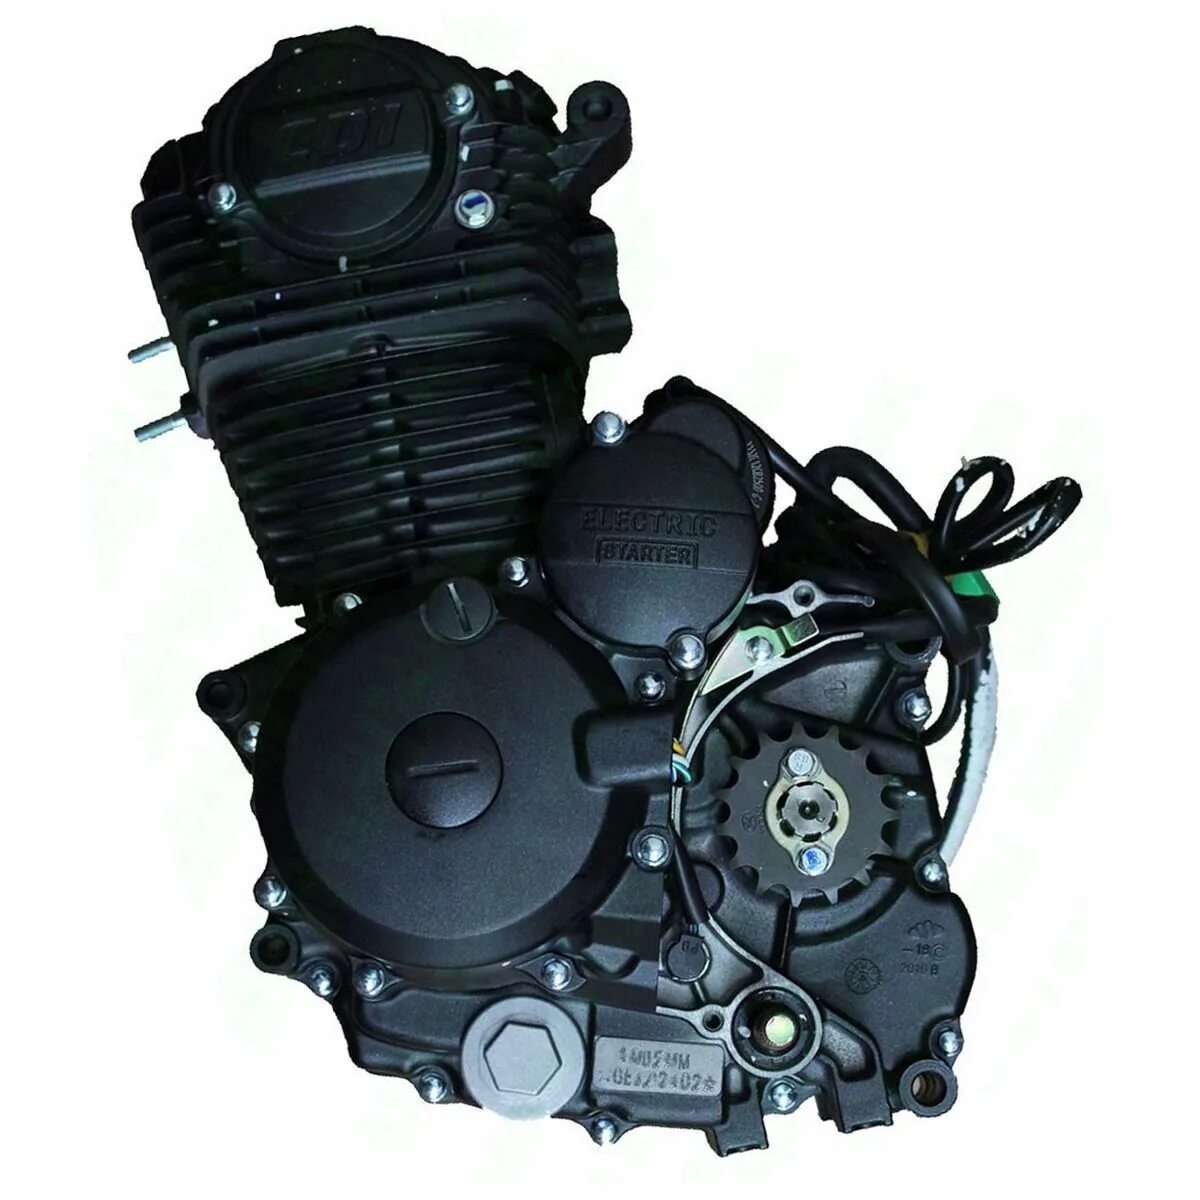 Мотор 150 кубов купить. Зонгшен 150 кубов мотор. Zongshen 250cc. Двигатель Zongshen 250 кубов. Двигатель Зонгшен 250 кубов для мотоцикла.